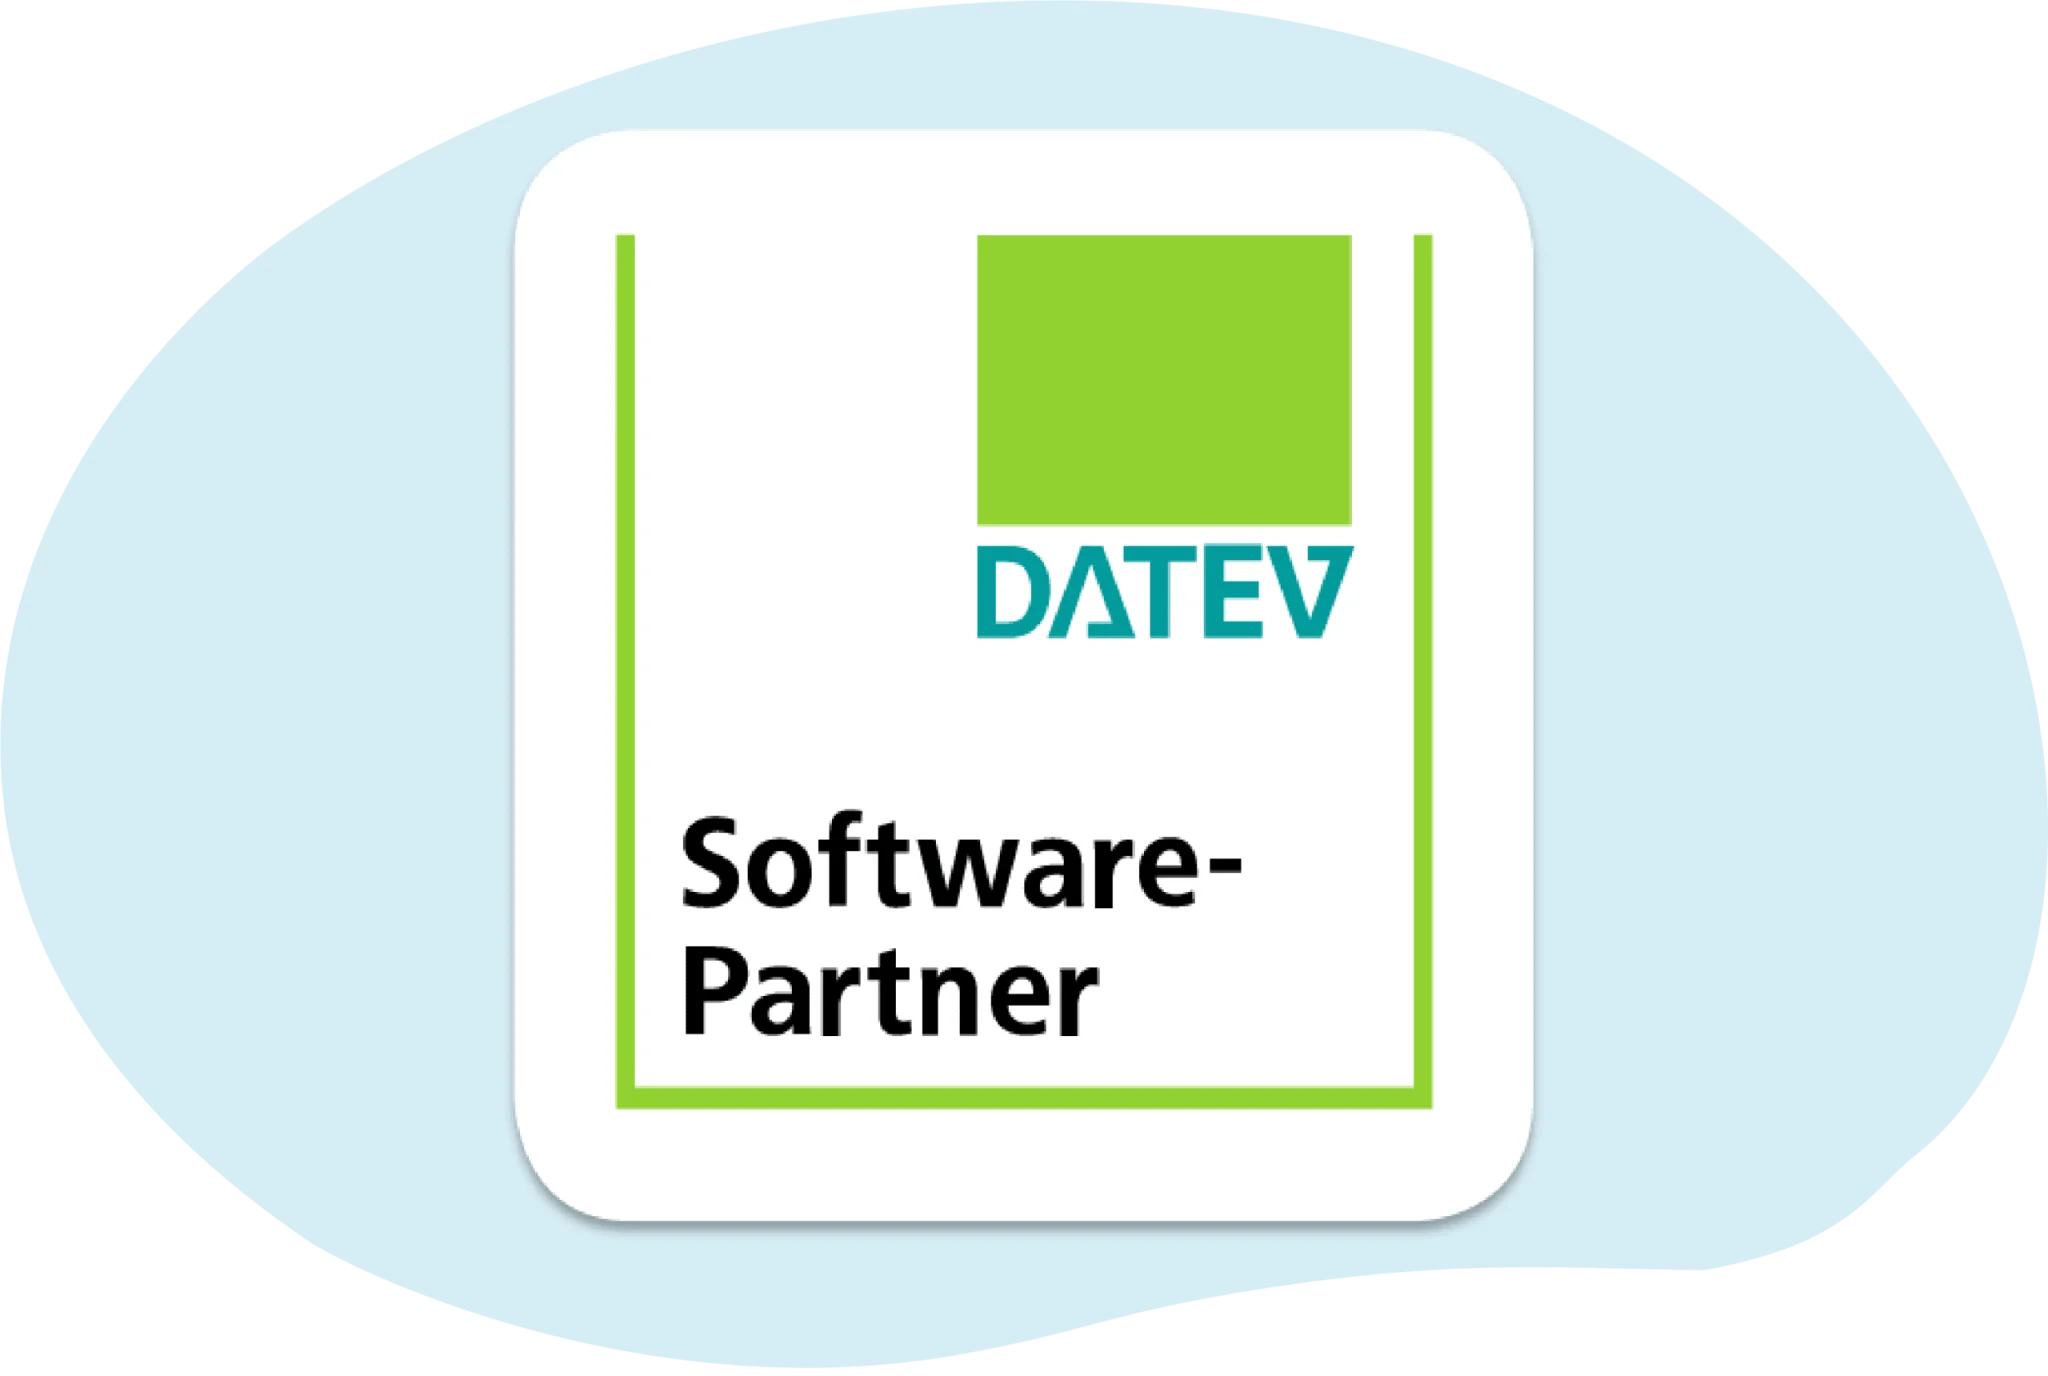 Datev-Software-Partner